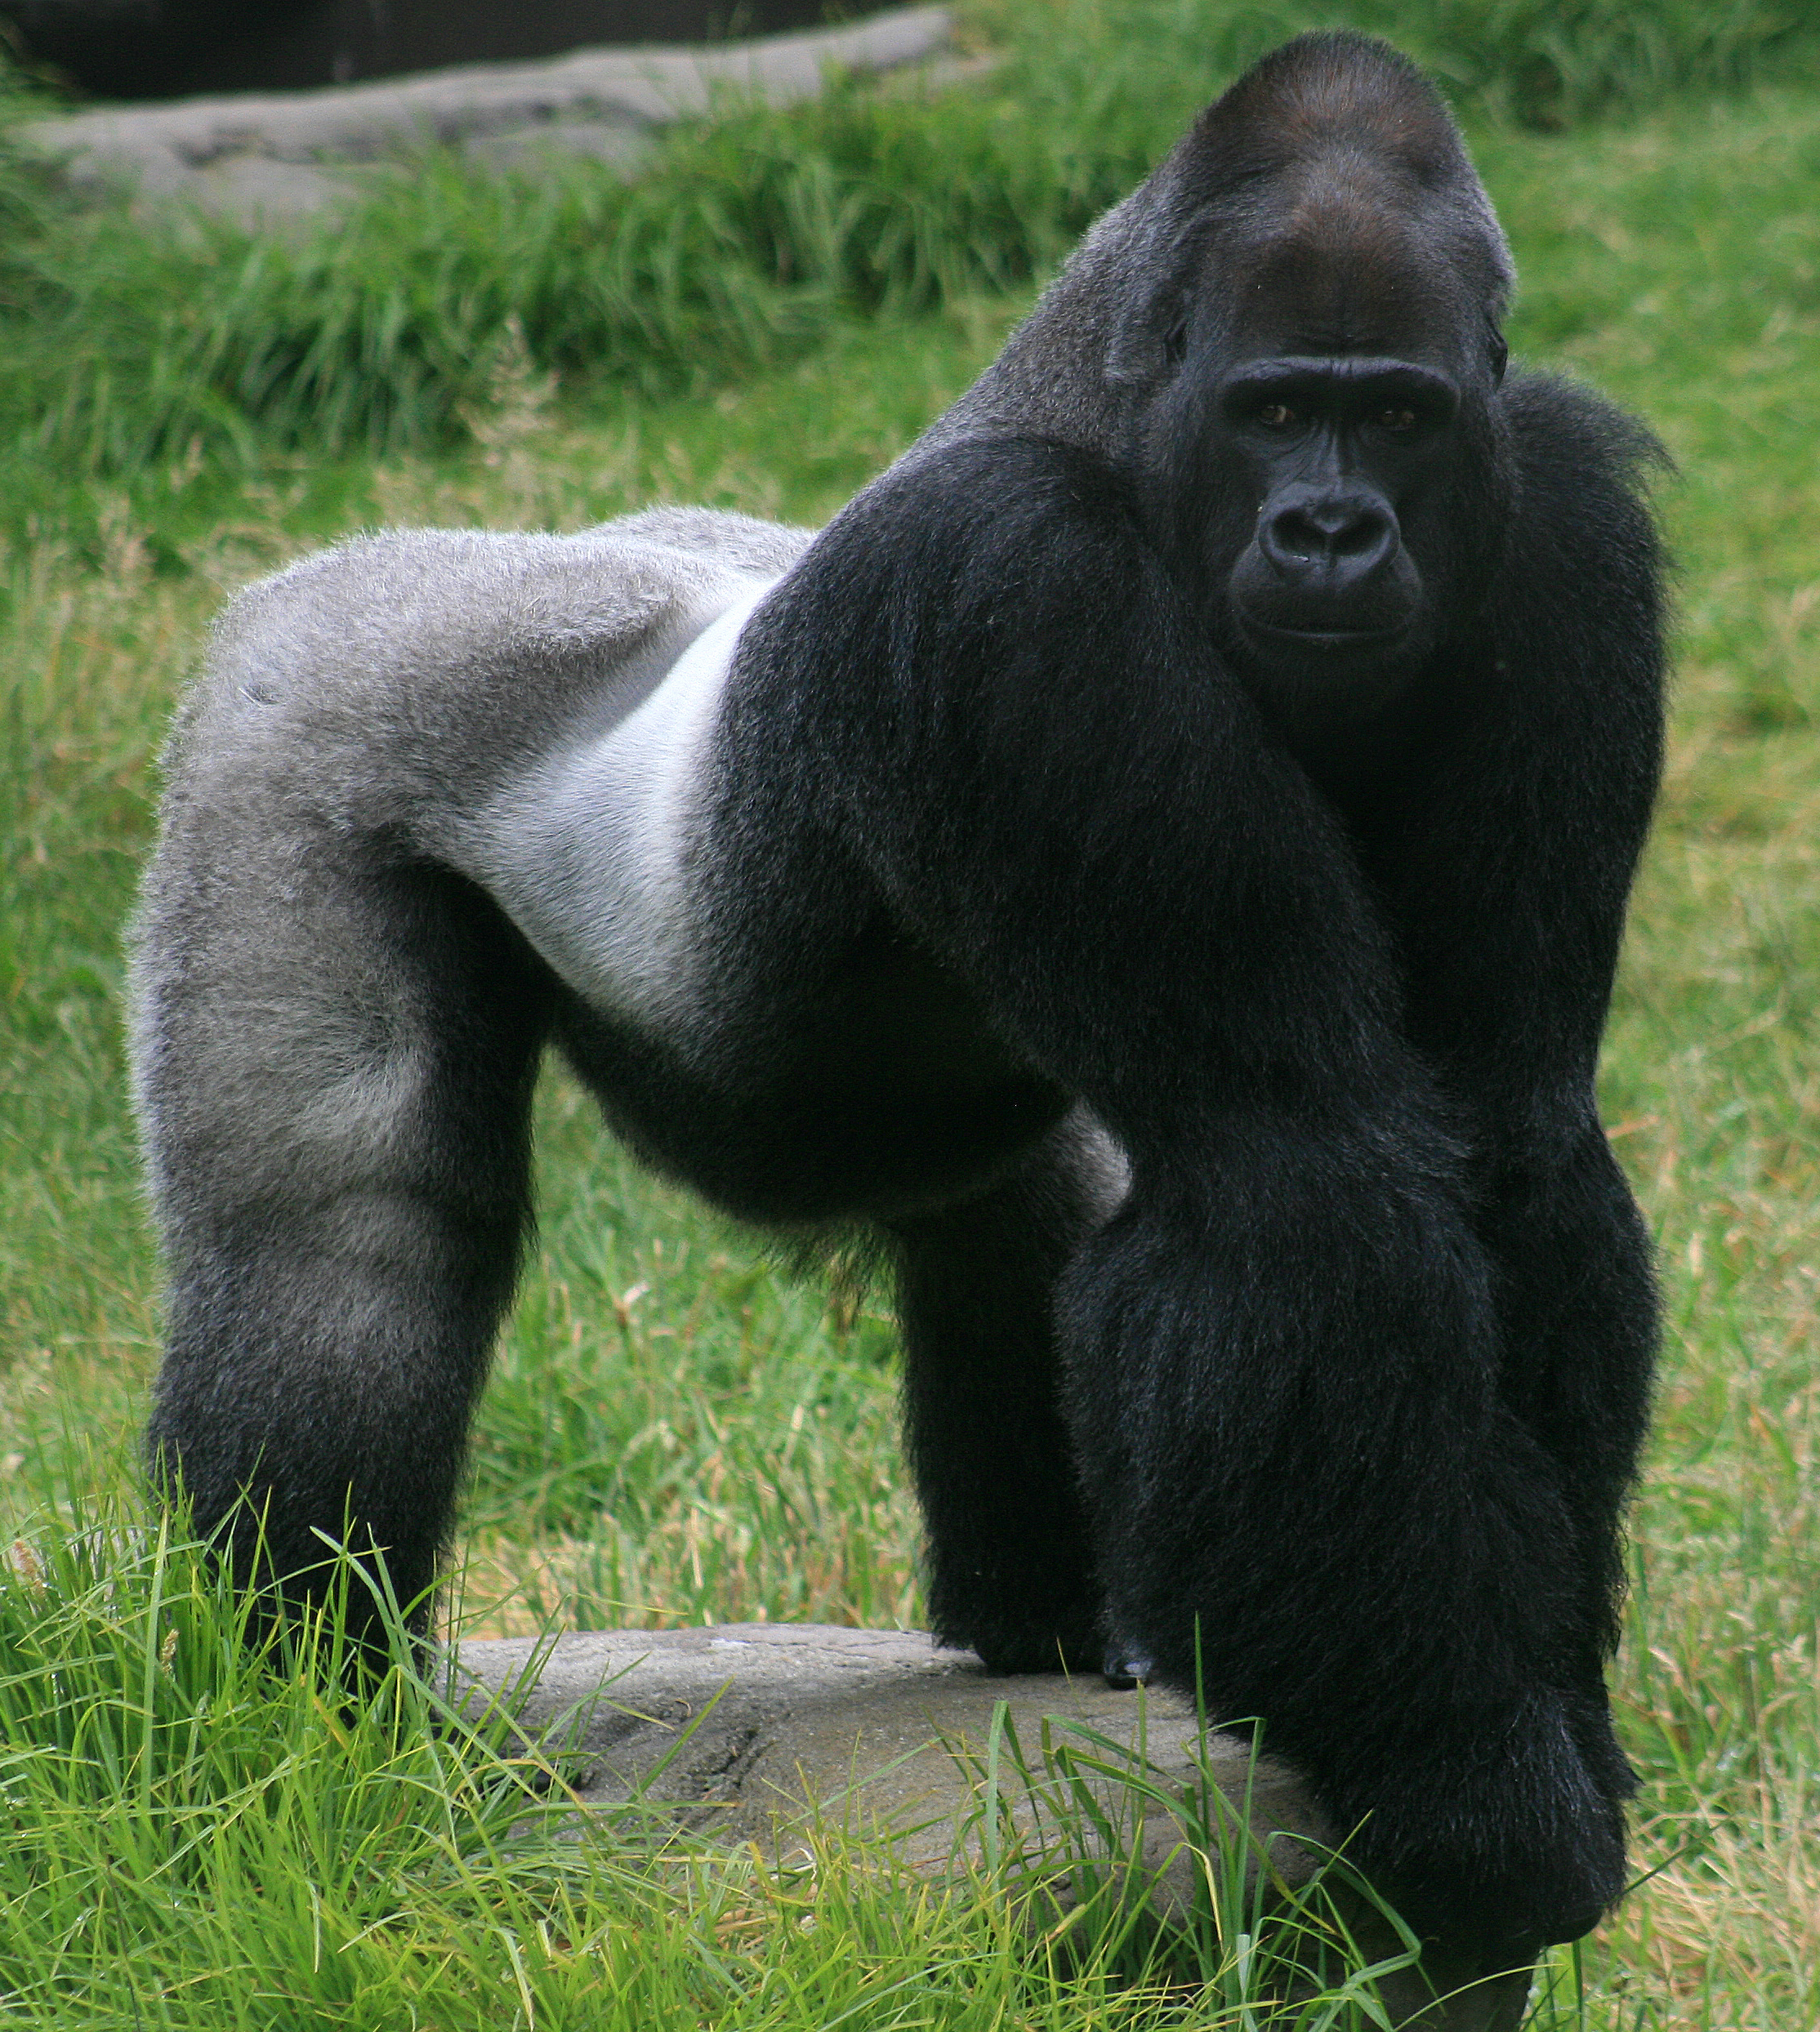 Male_gorilla_in_SF_zoo